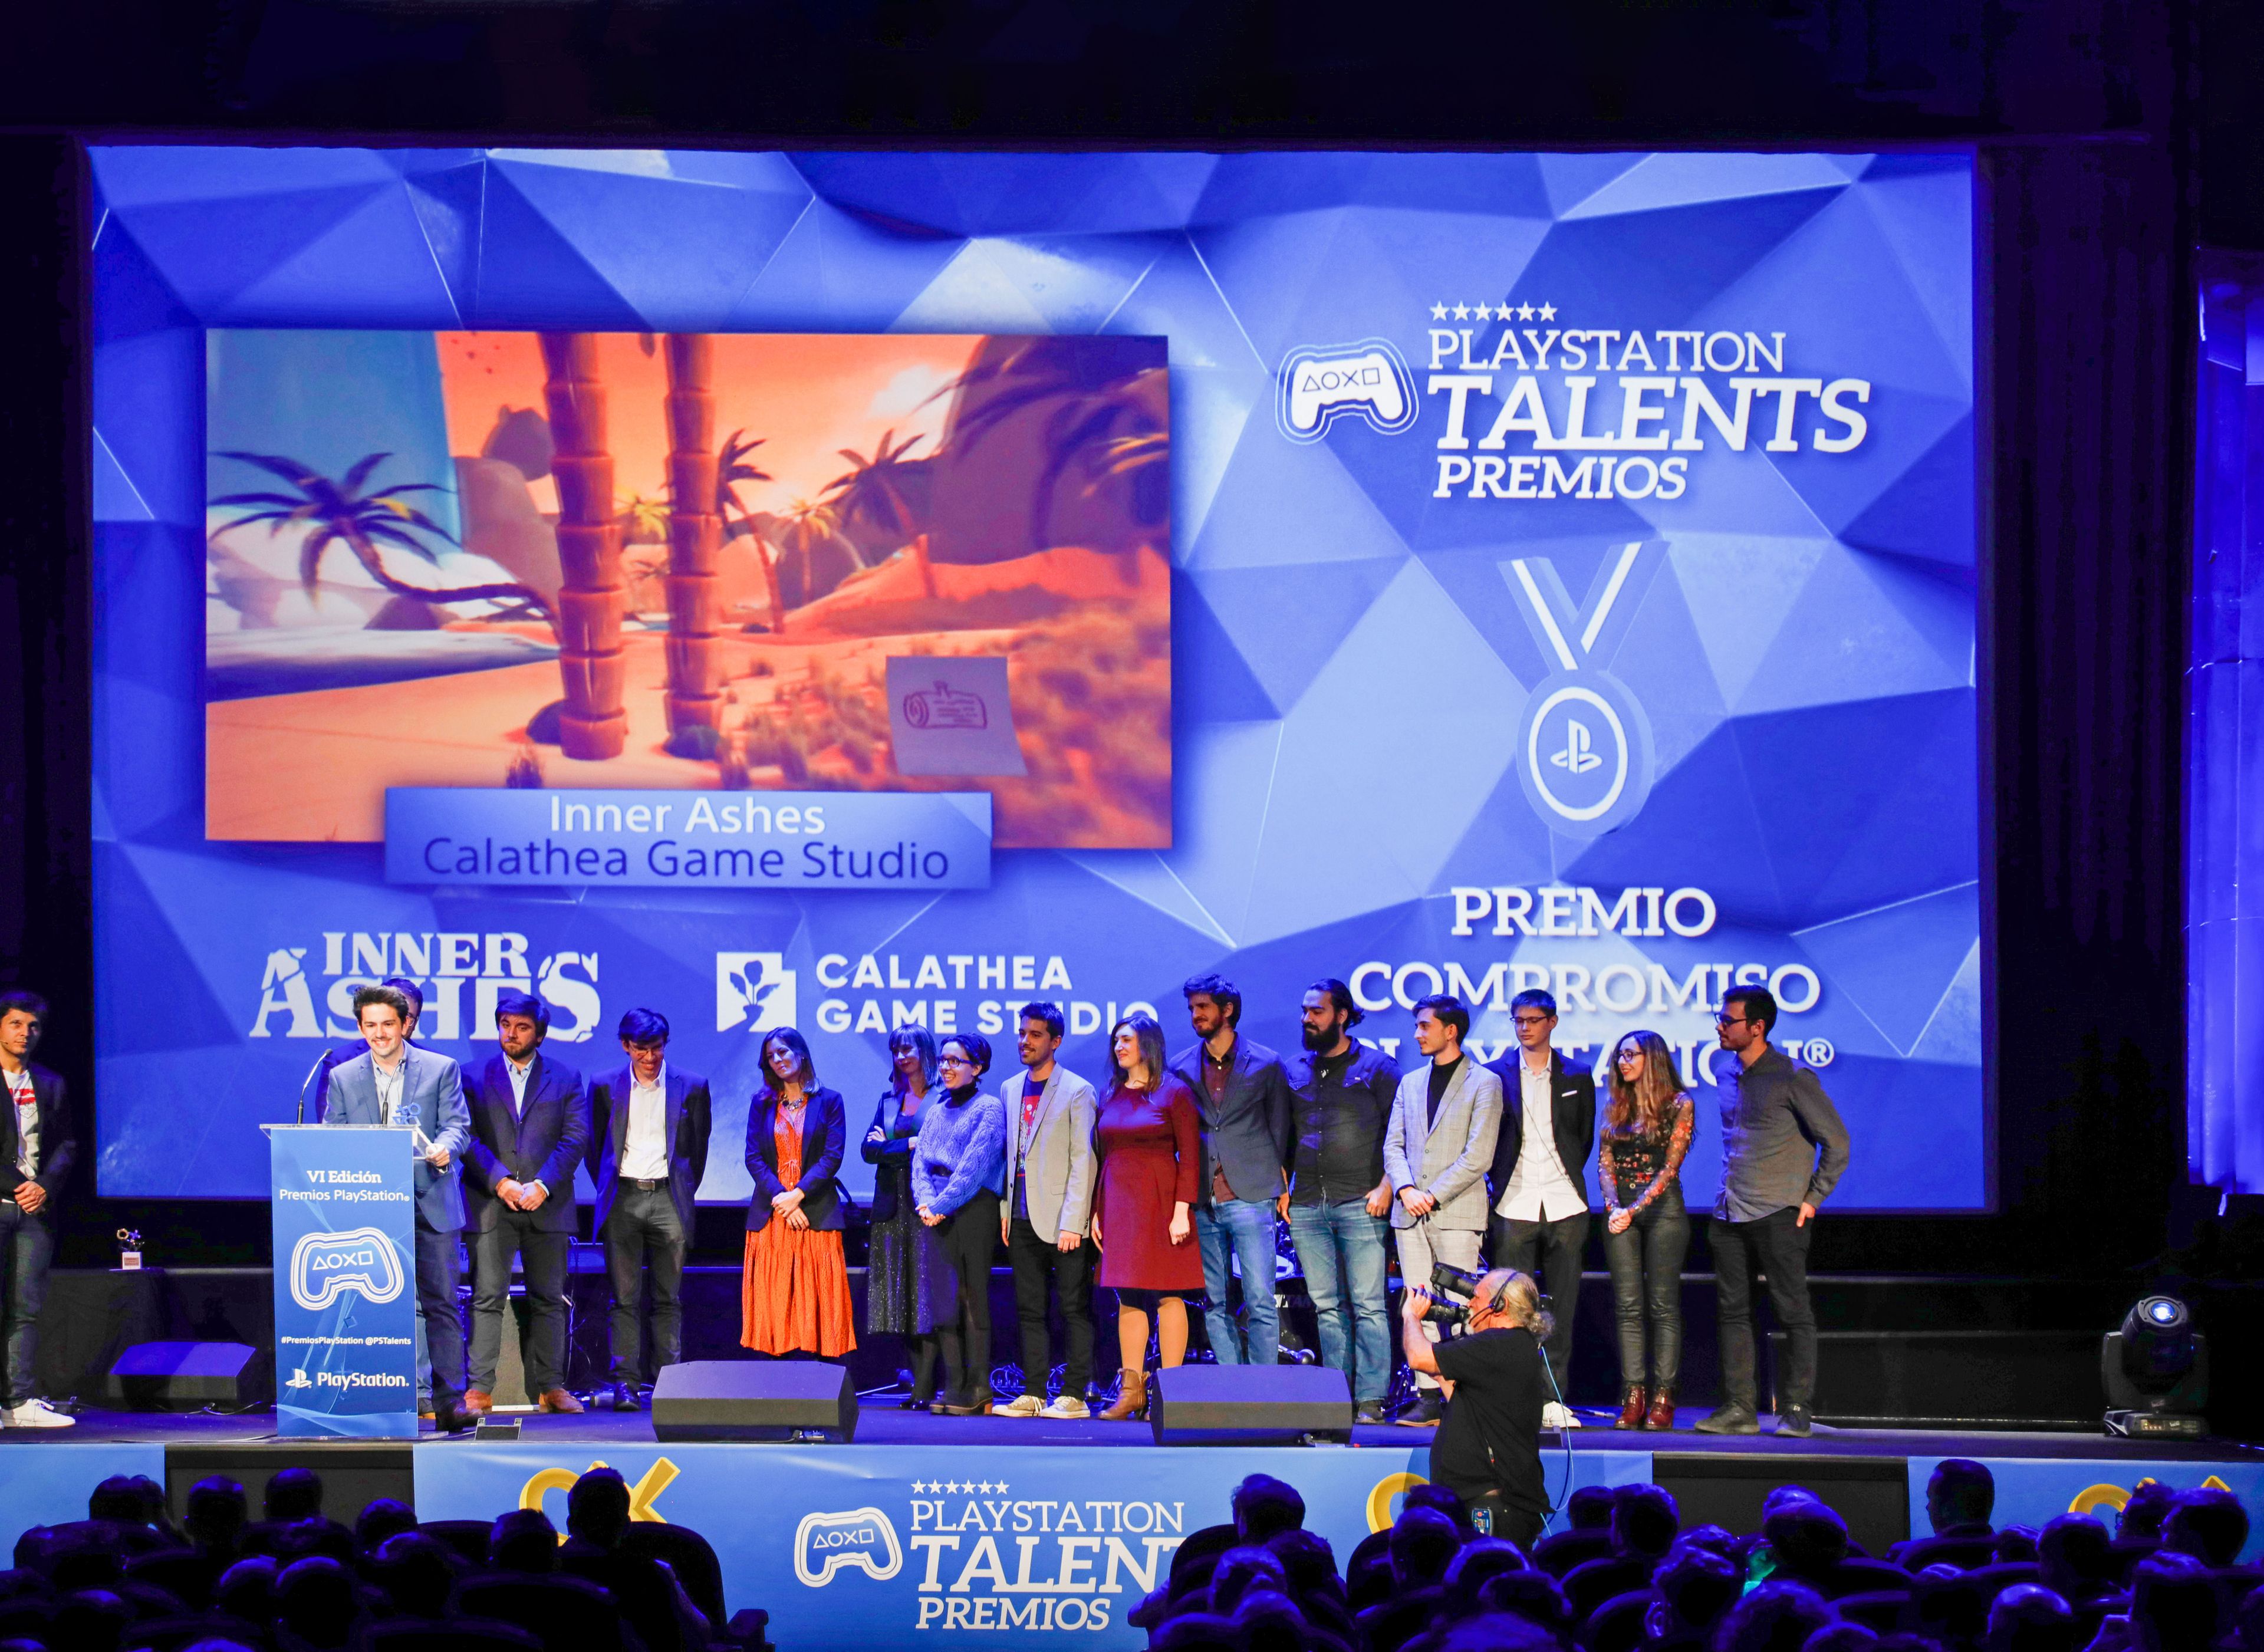 Con 6 juegos premiados y 3 finalistas, Voxel School es la escuela de postgrado más galardonada de España en los premios PlayStation Talents.